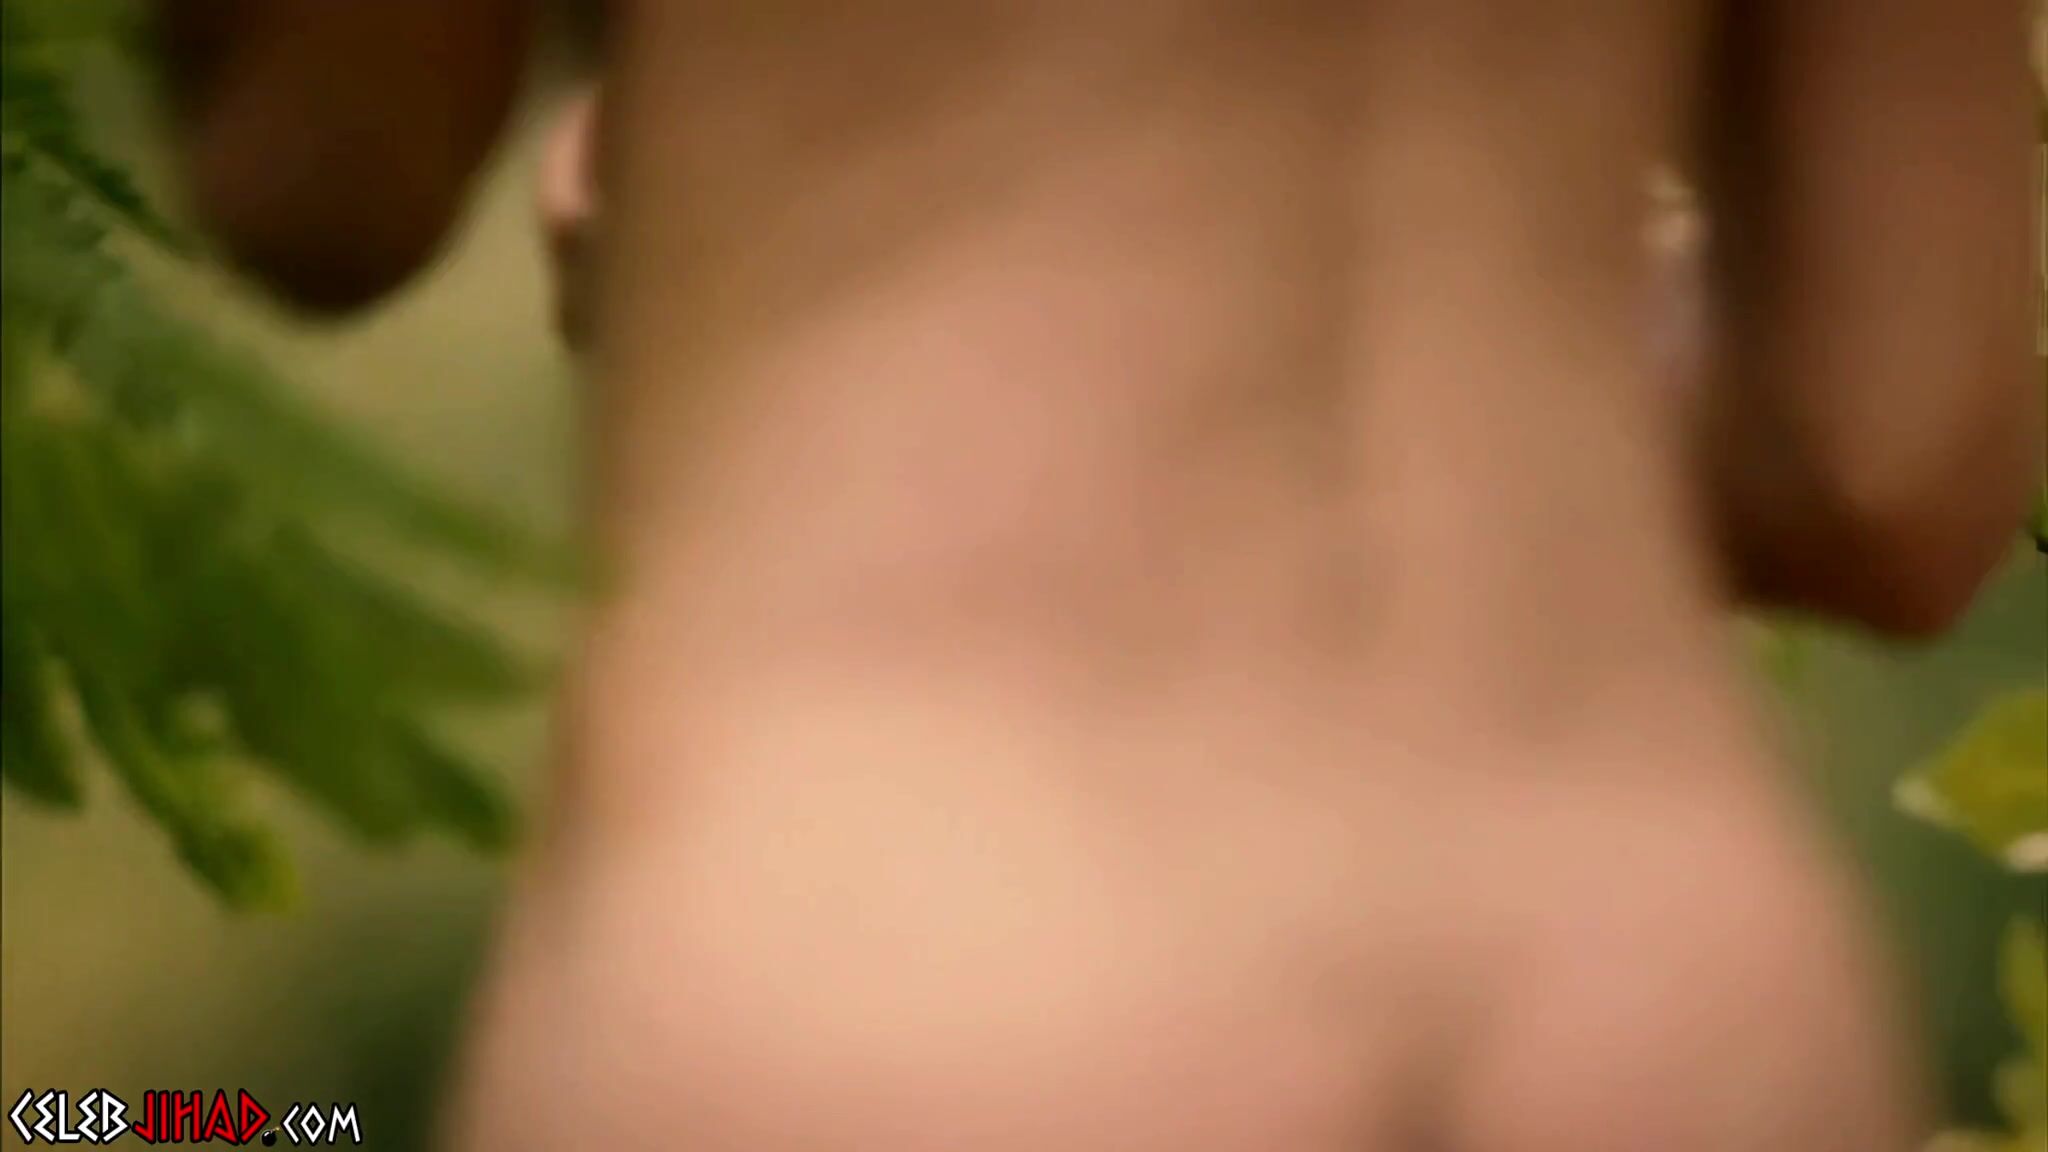 Violett Beane Sex - Hot Violett Beane Nude Scene From -Leftovers- Enhanced - ViralPornhub.com